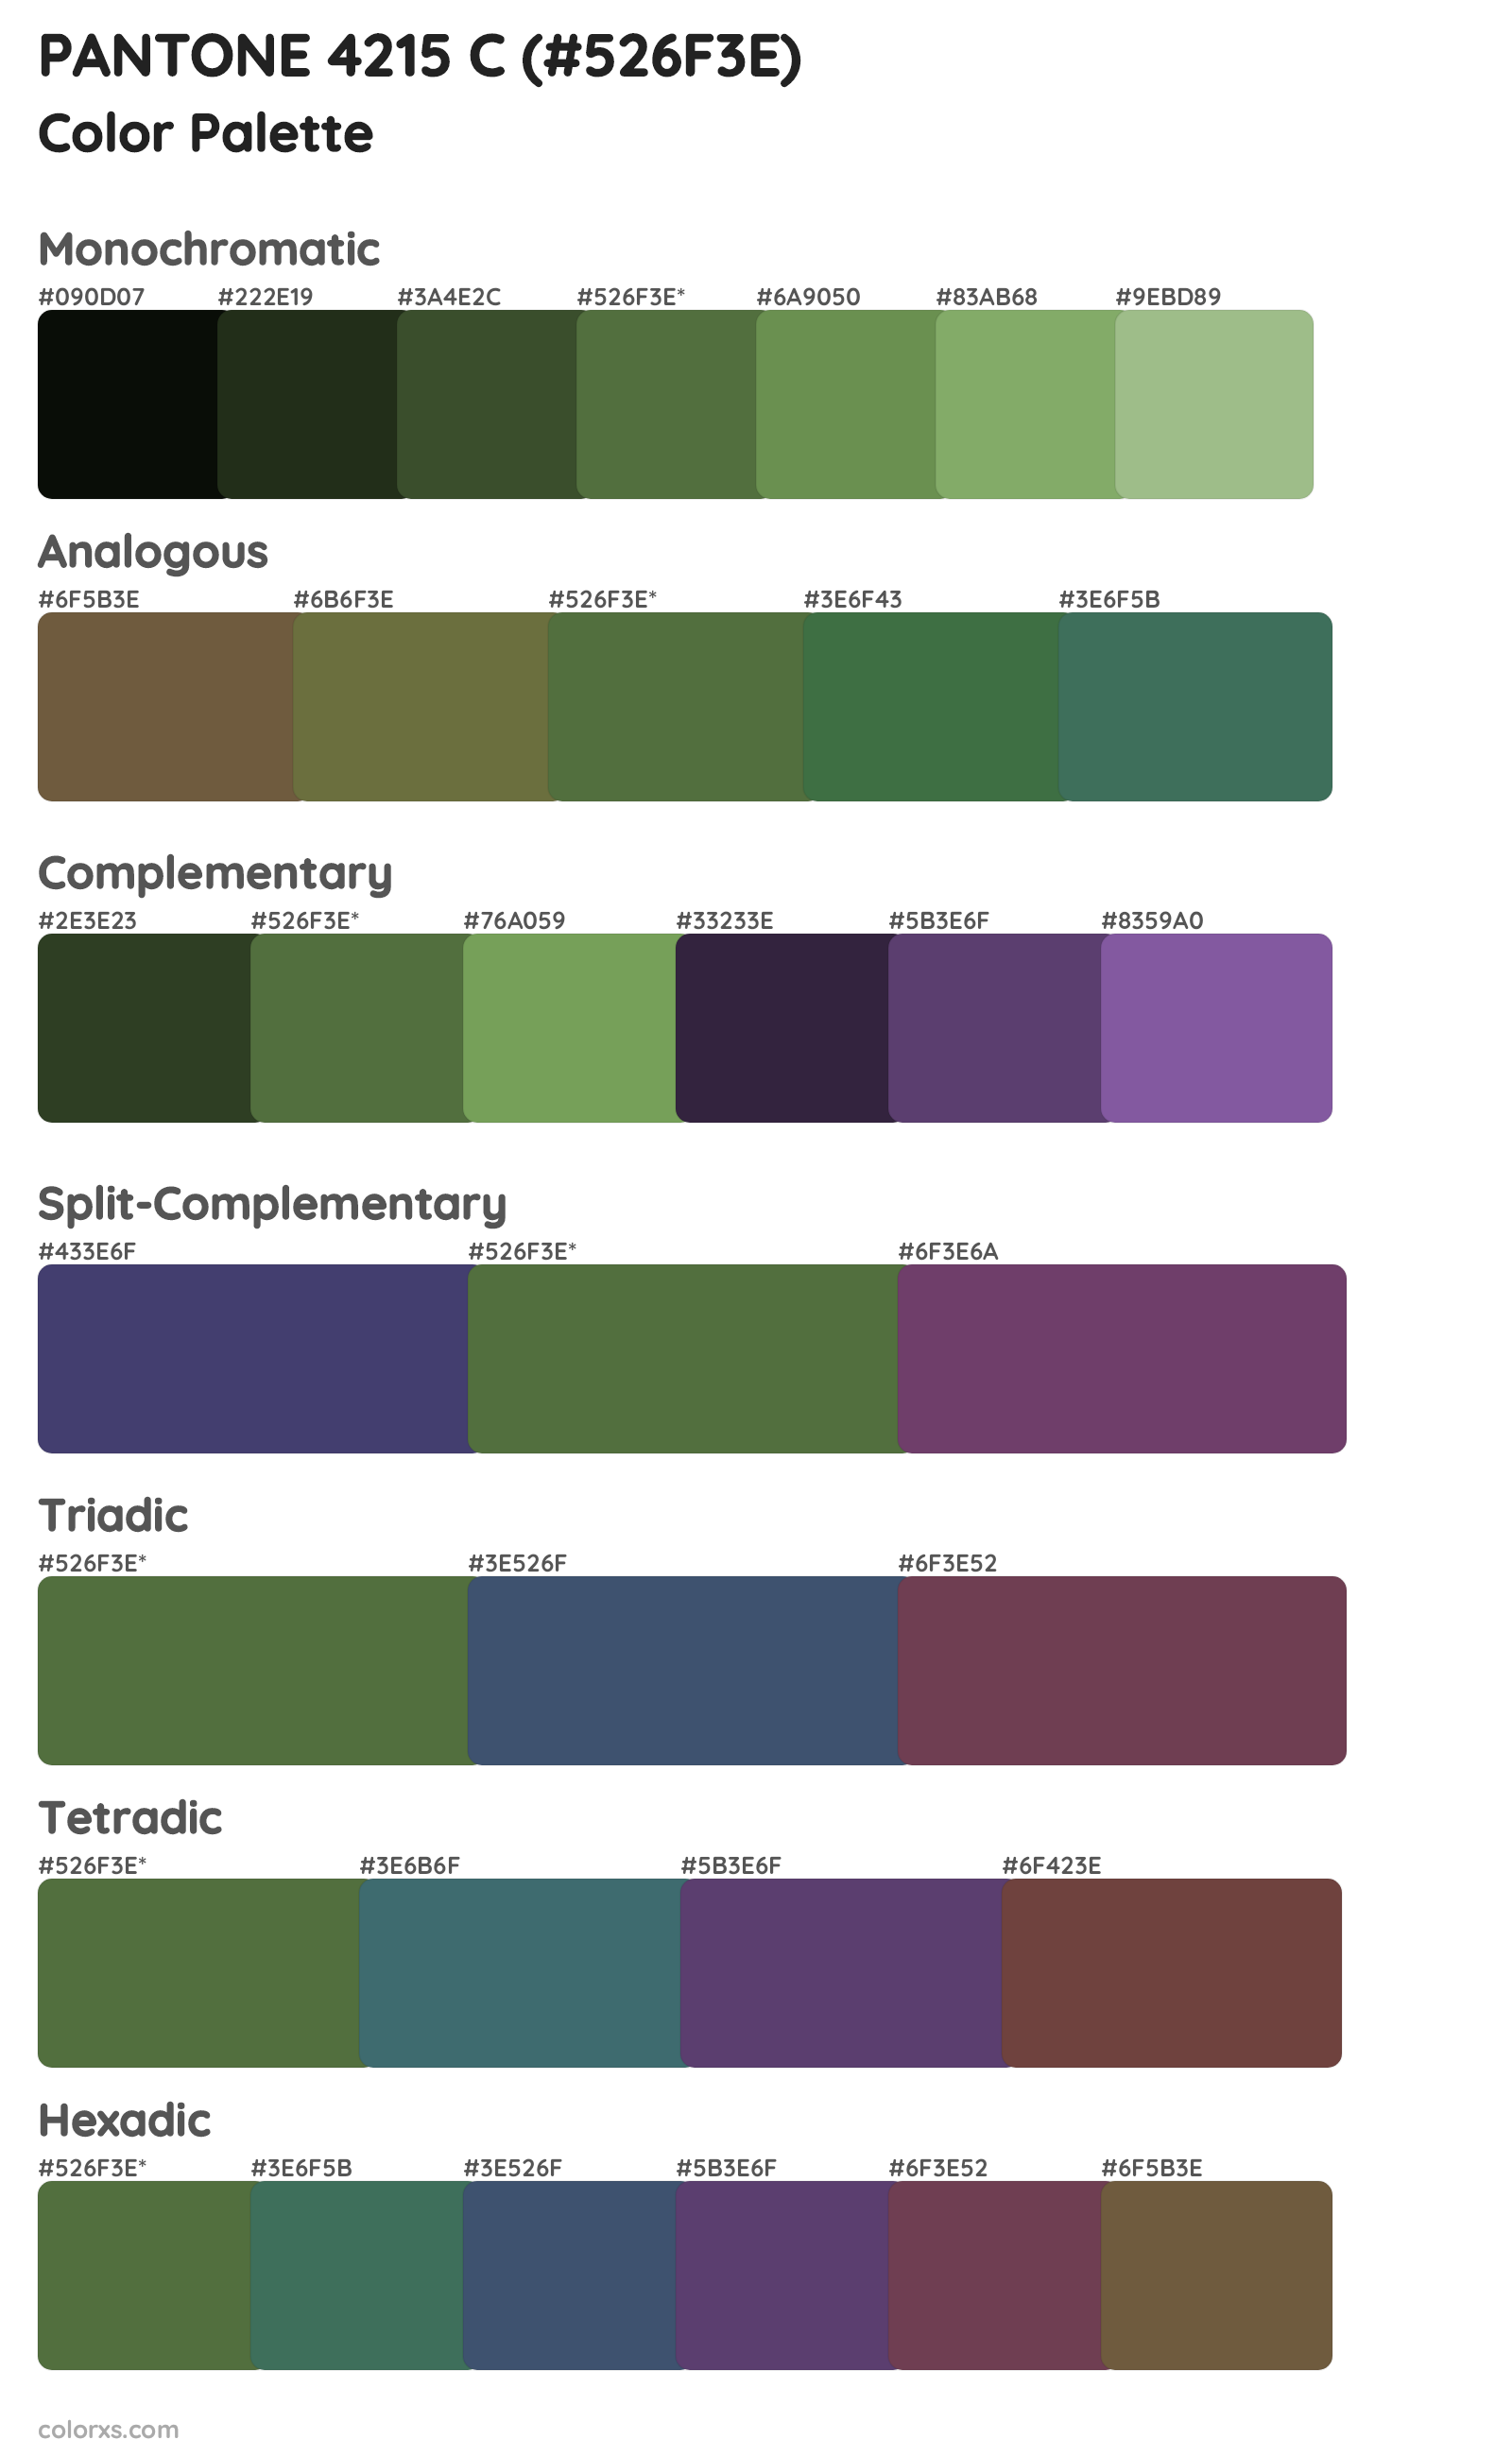 PANTONE 4215 C Color Scheme Palettes